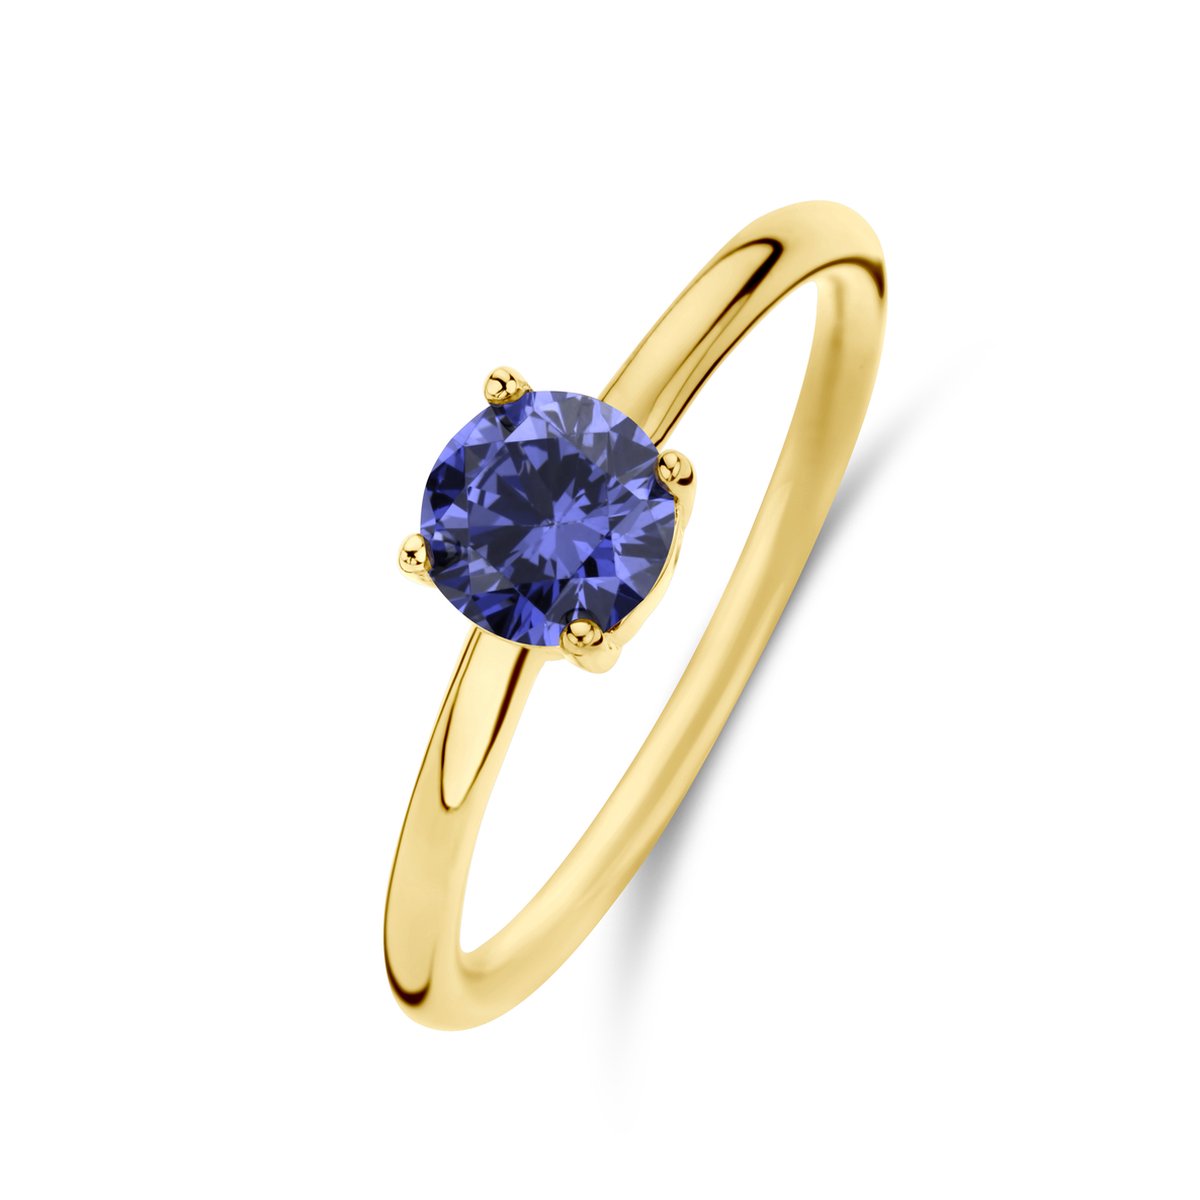 New Bling 9NB-0902-54 Zilveren Ring - Dames - Zirkonia - Rond - 6 mm - Violet Blauw - Maat 54 - 1,76 mm - Zilver - Gold Plated (Verguld/Goud op Zilver)